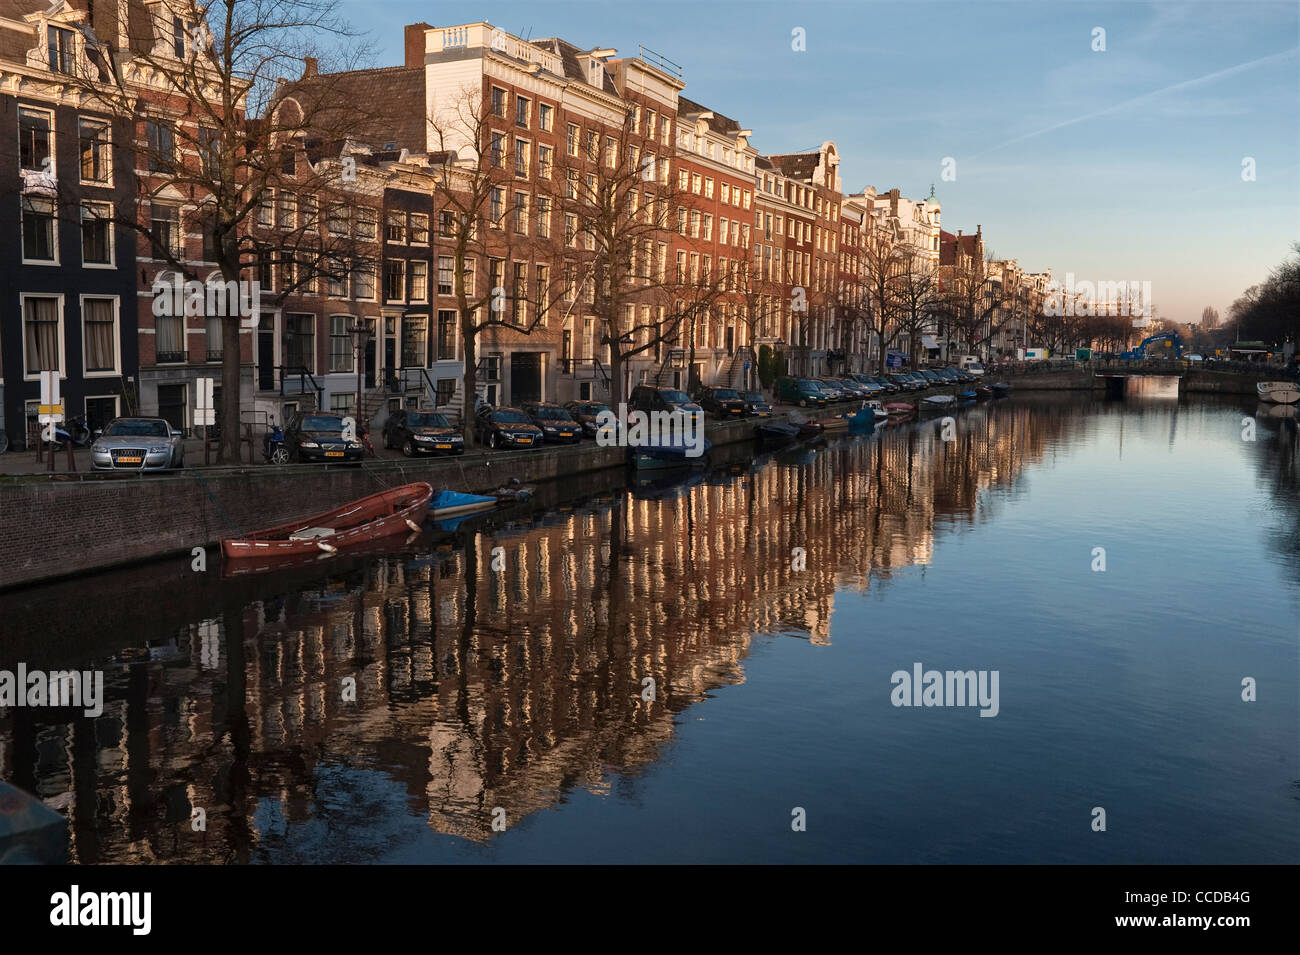 Le case si riflettono nelle acque ferme del canale Keizersgracht in una tranquilla serata invernale ad Amsterdam, nei Paesi Bassi Foto Stock